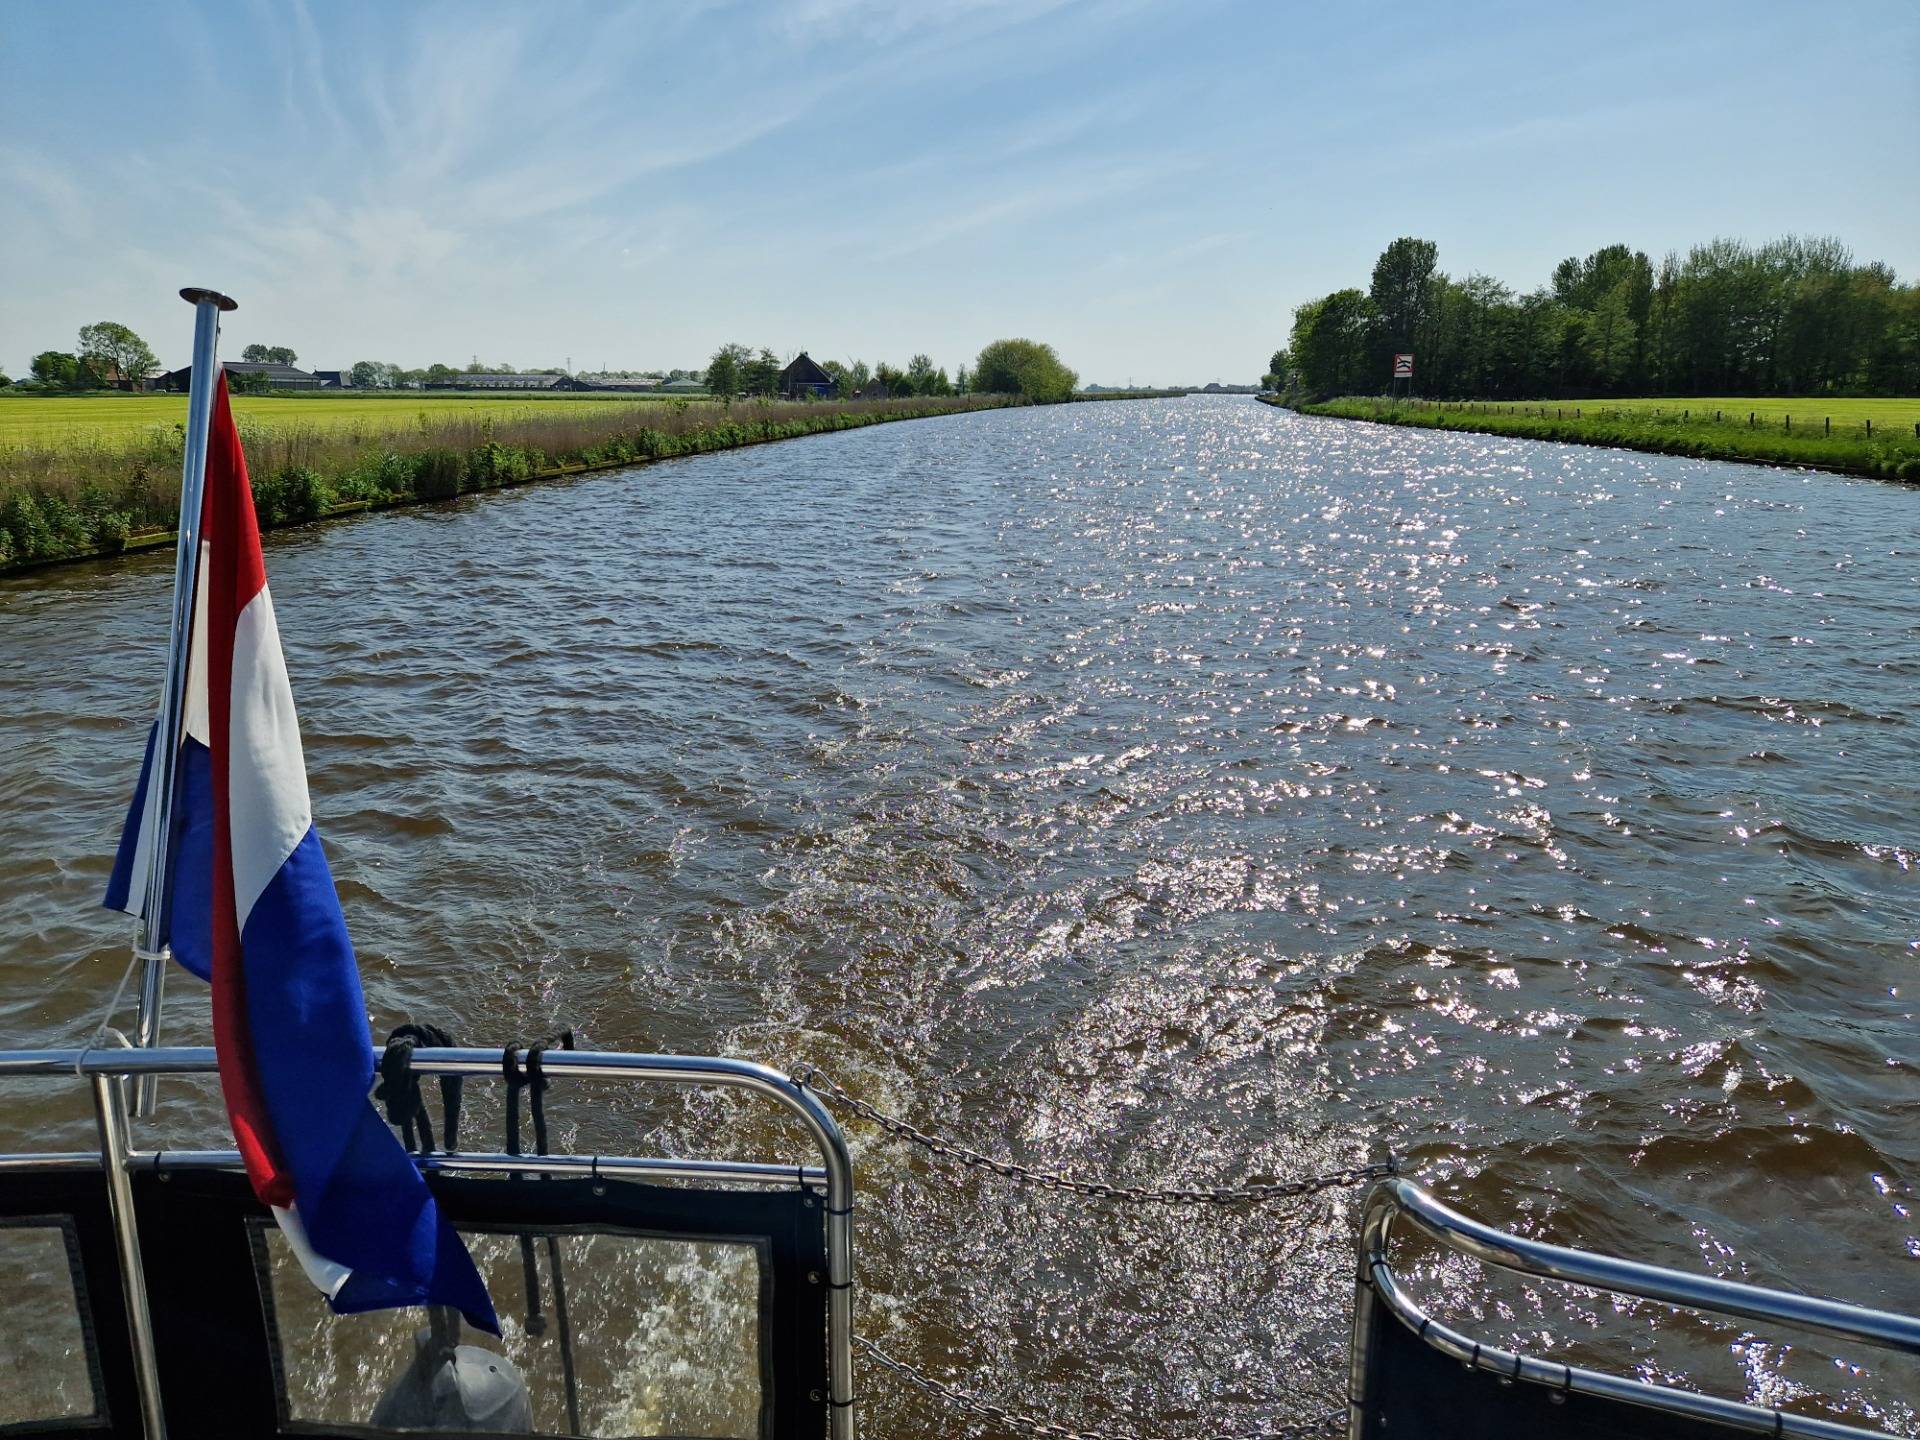 Entering Leeuwarden by boat